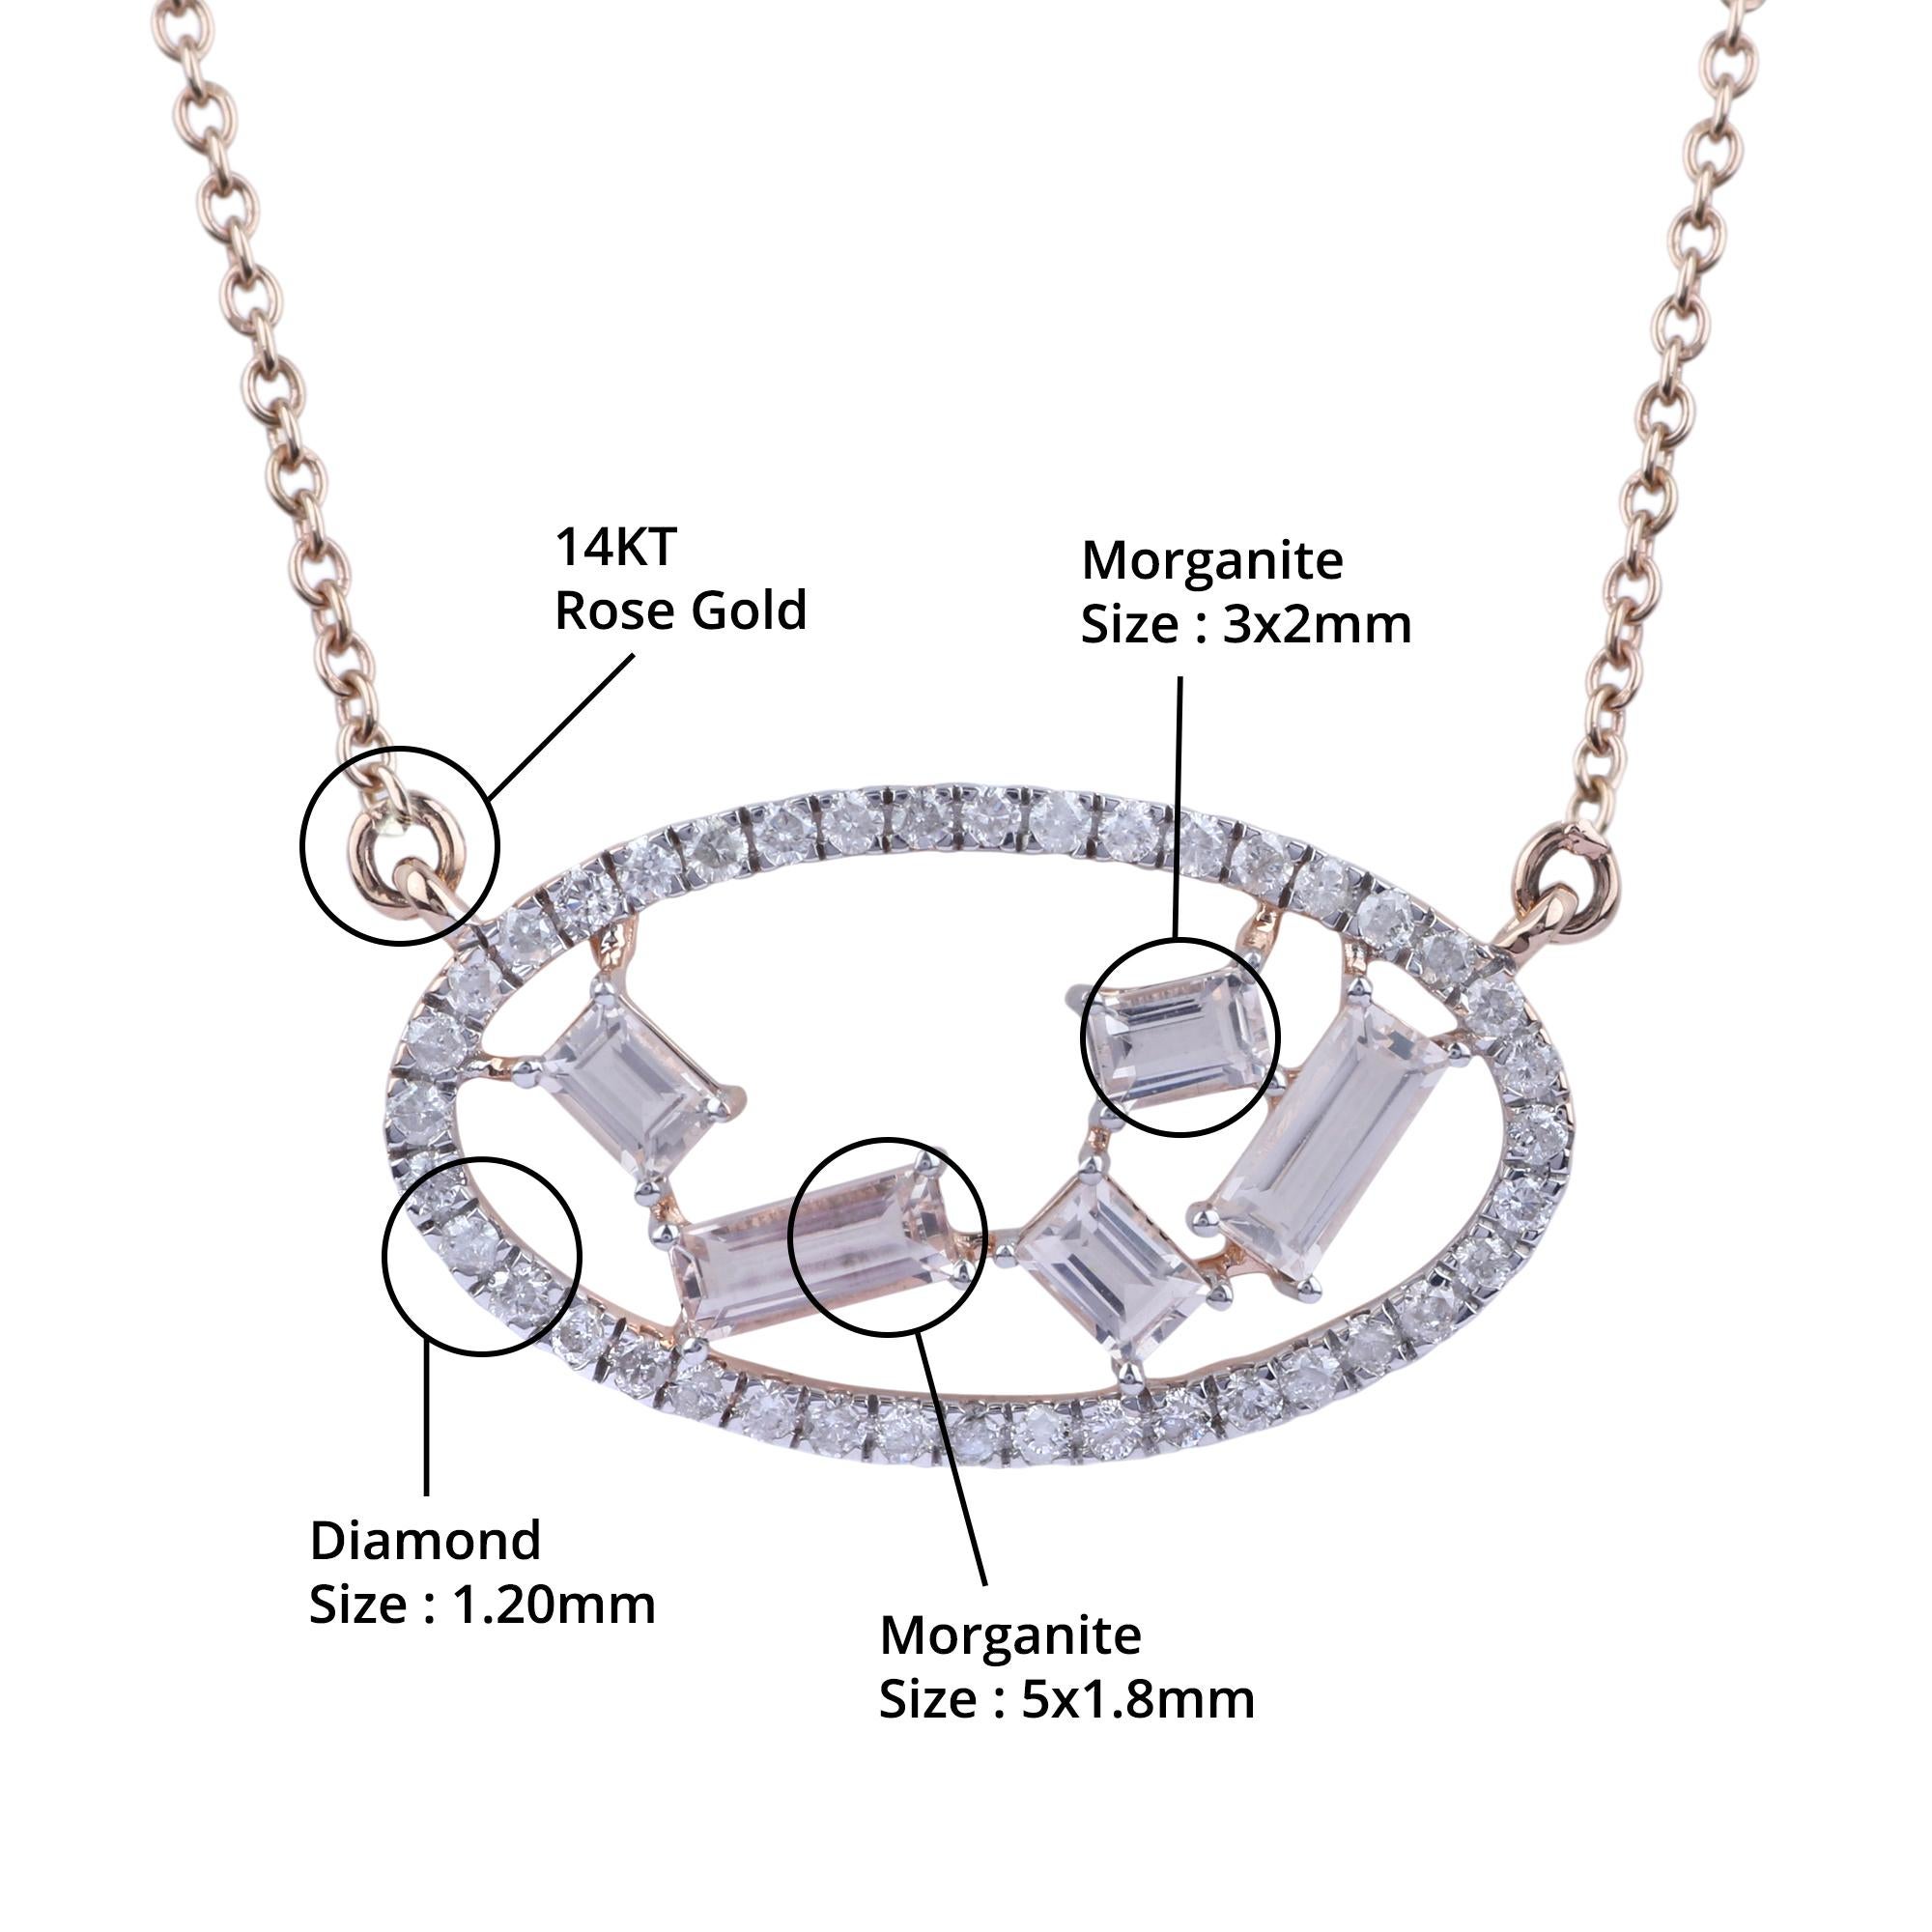 Détails de l'article:-

✦ SKU:- JNC00007RRR

✦ Matériau :- Or

✦ Pureté du métal : or rose 14K

✦ Gemstone Specification:- 
✧ Diamant rond transparent (l1/H1) - 1.20 mm - 40
✧ Moissanite certifiée (VVS/DE) - 3x2 mm - 3
✧ Moissanite certifiée